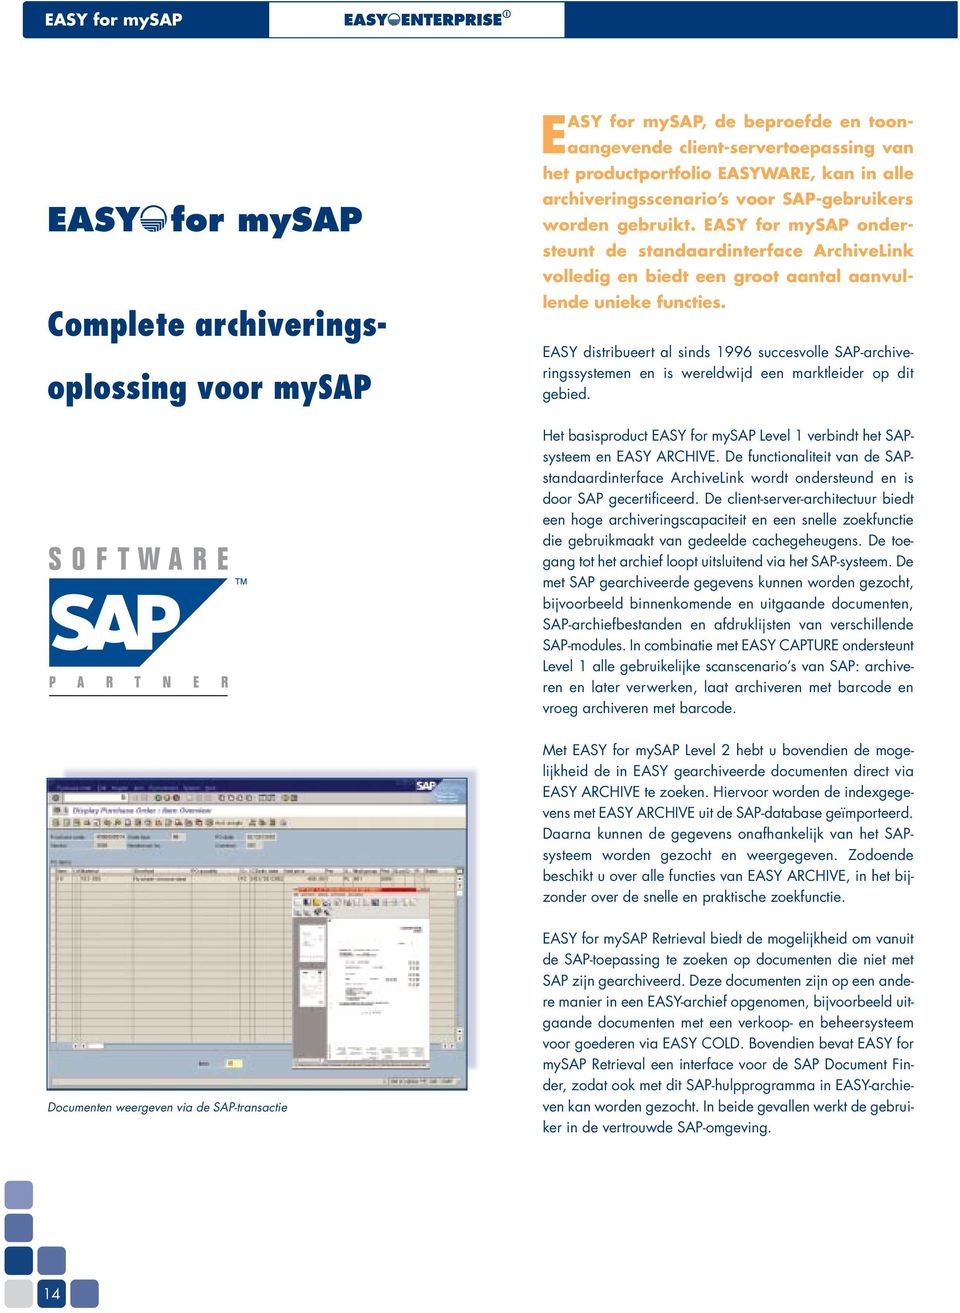 EASY distribueert al sinds 1996 succesvolle SAP-archiveringssystemen en is wereldwijd een marktleider op dit gebied. Het basisproduct EASY for mysap Level 1 verbindt het SAPsysteem en EASY ARCHIVE.